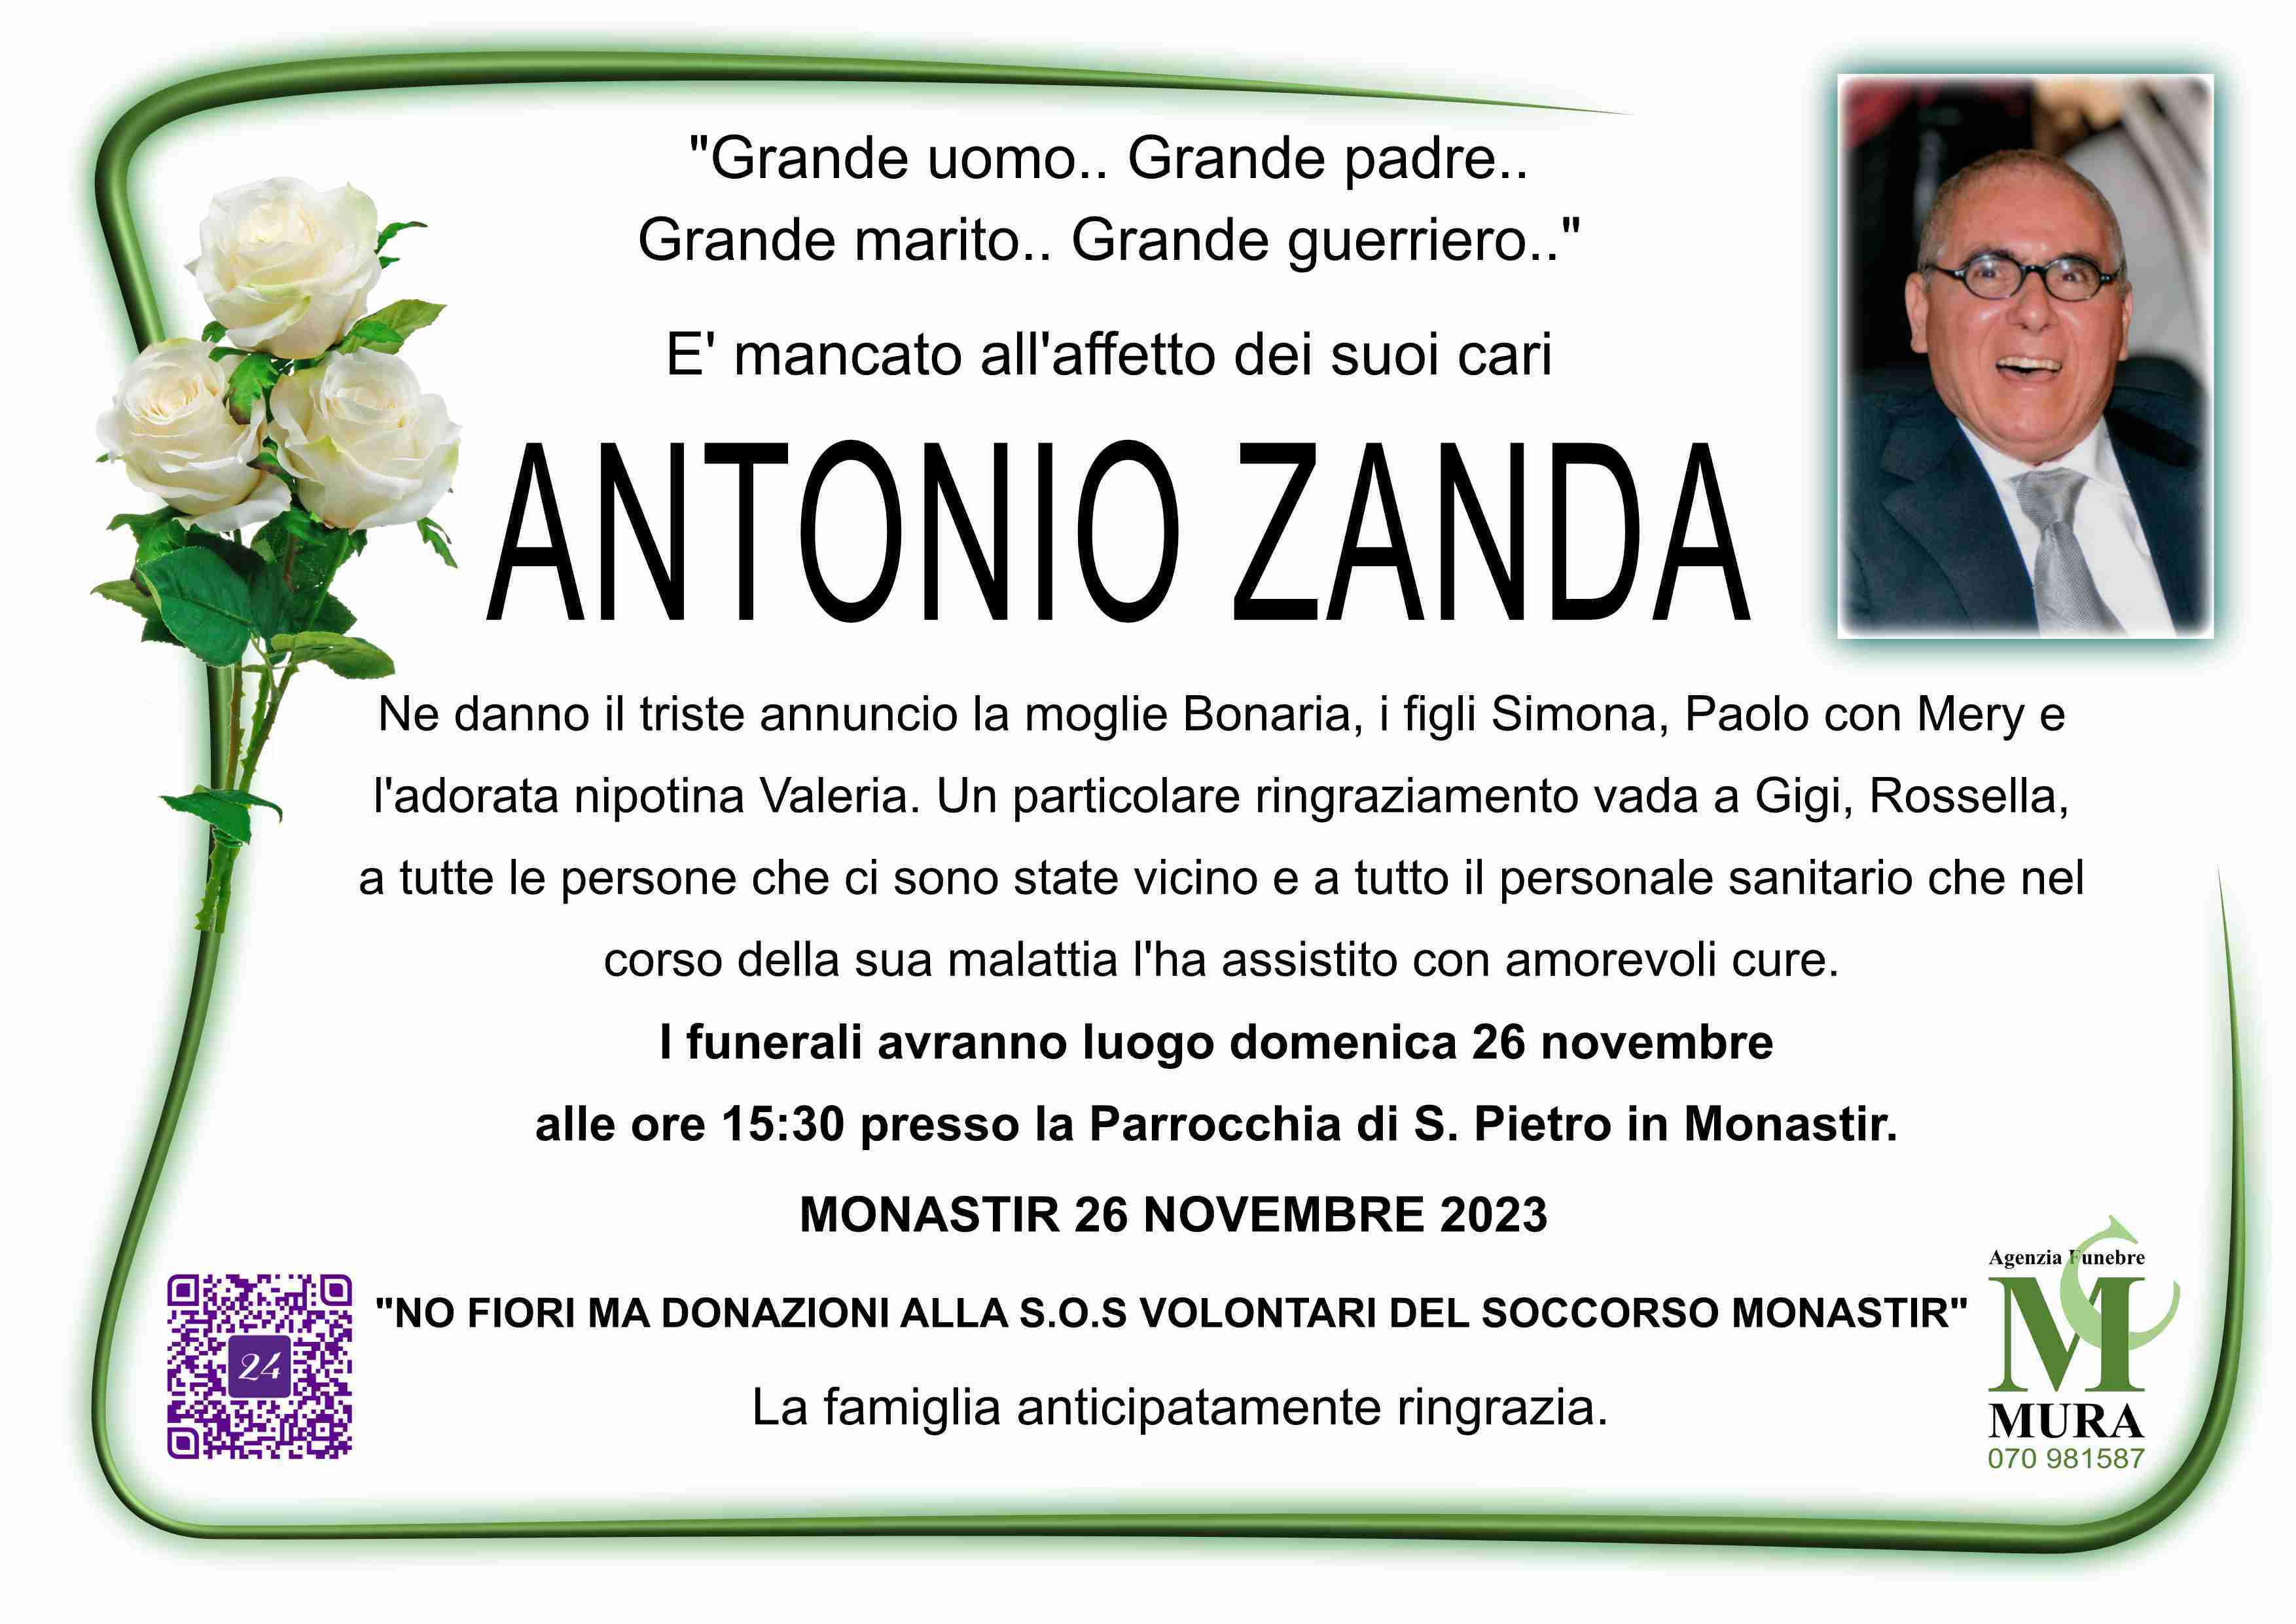 Antonio Zanda